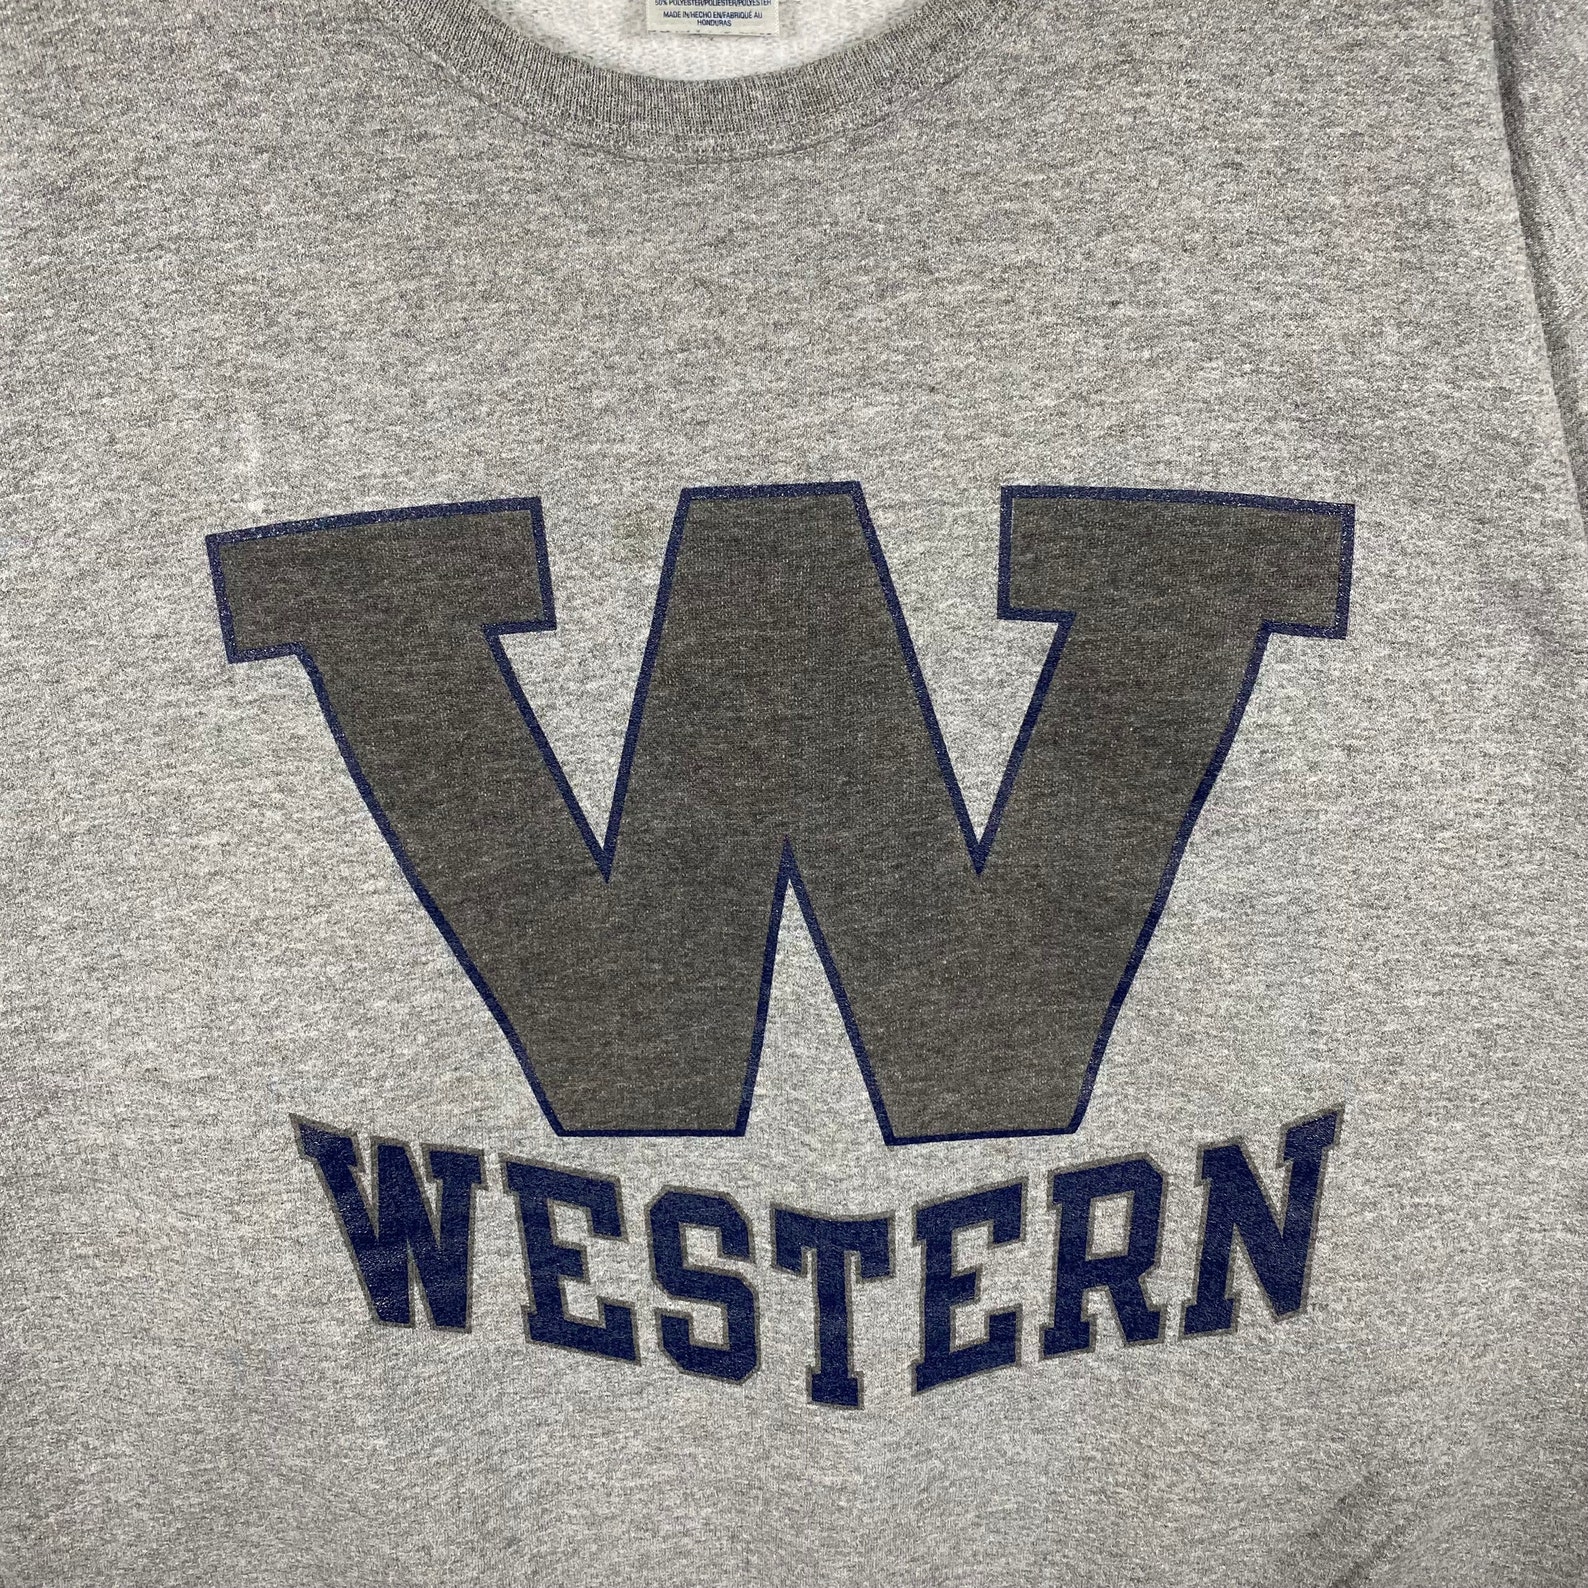 Vintage Western Sweatshirt | Etsy